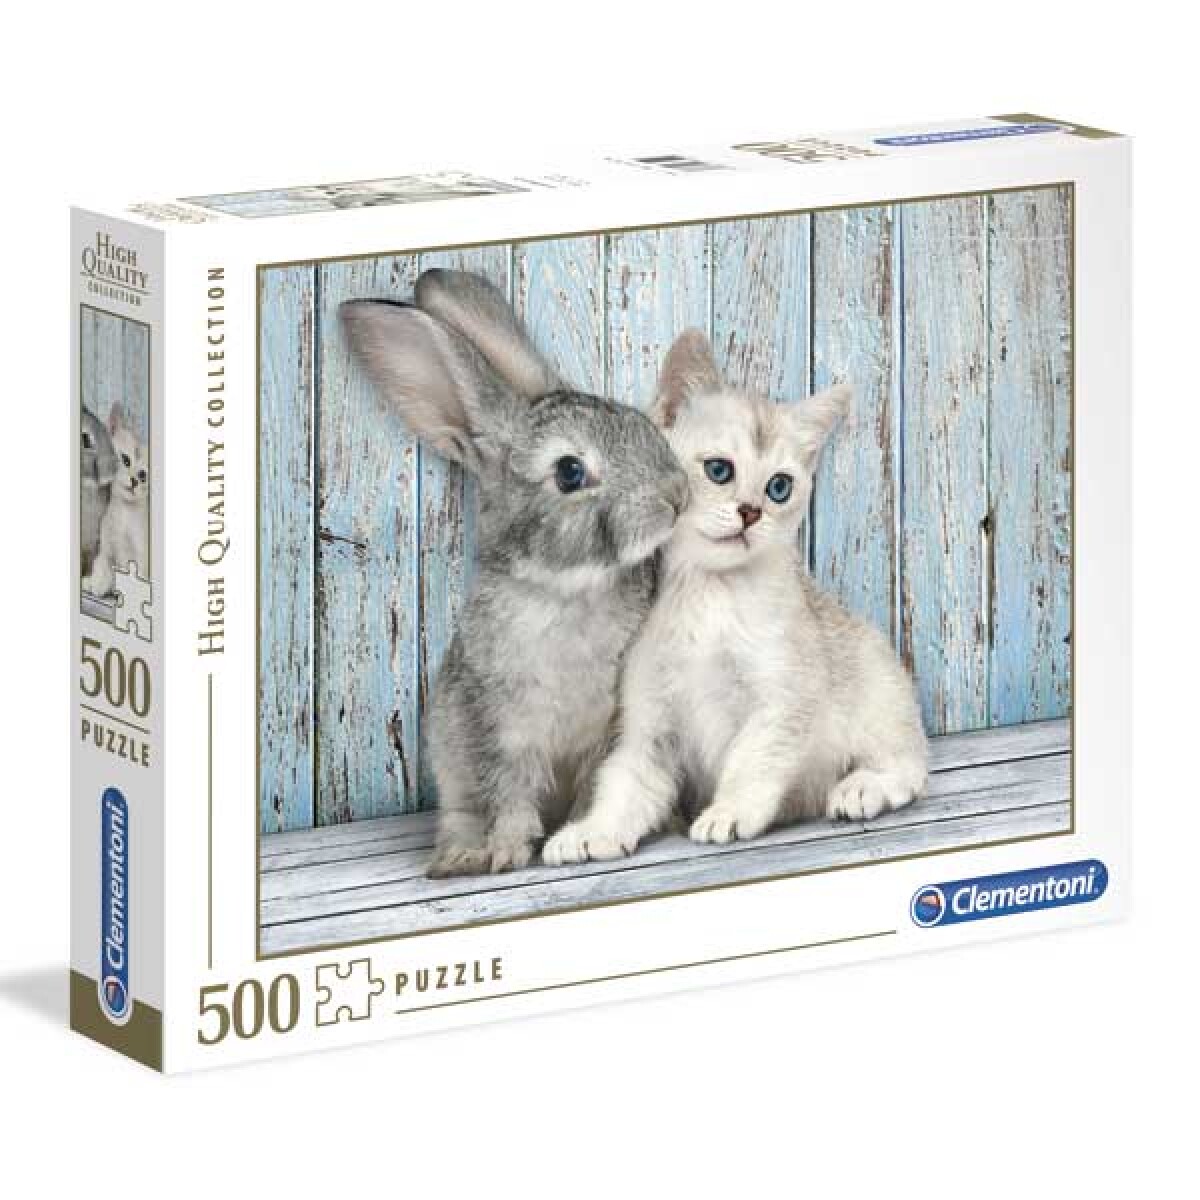 Puzzle Clementoni 500 piezas Conejo y gato - 001 